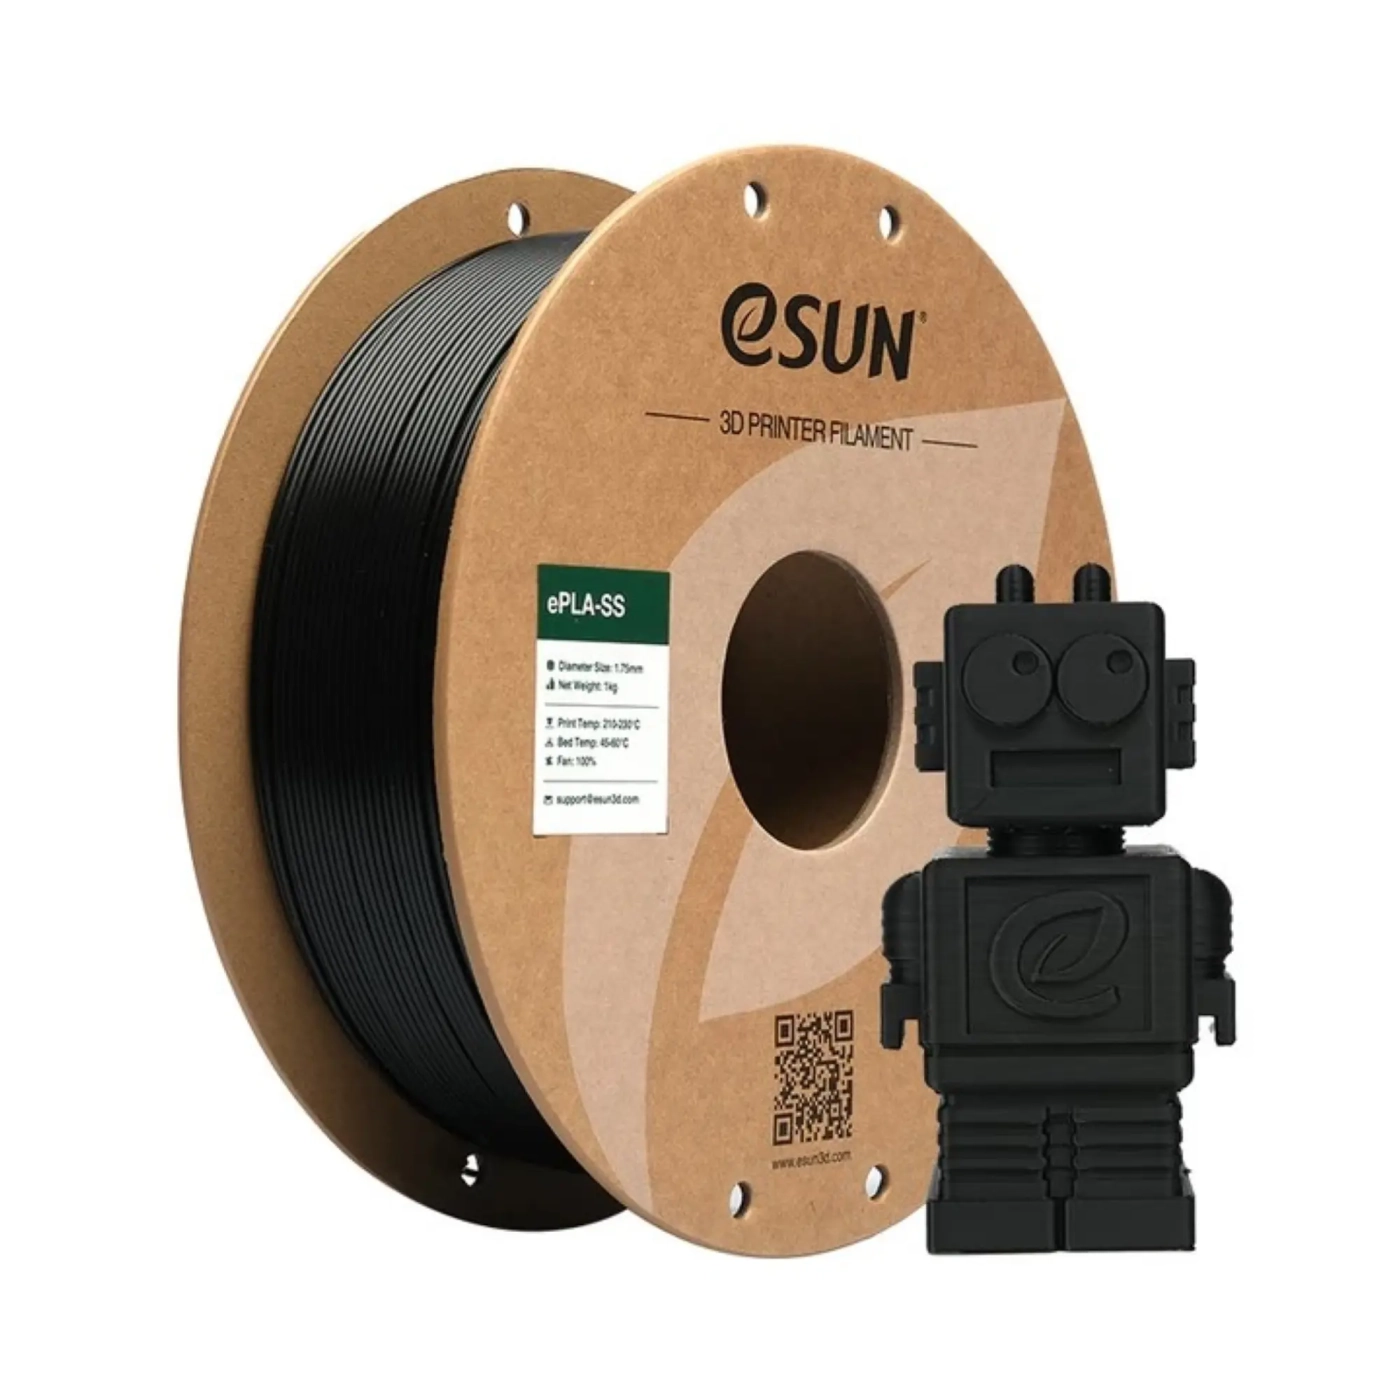 Купить ePLA-SS Filament (пластик) для 3D принтера eSUN 1кг, 1.75мм, черный (ePLA-SS-P175B1) - фото 1